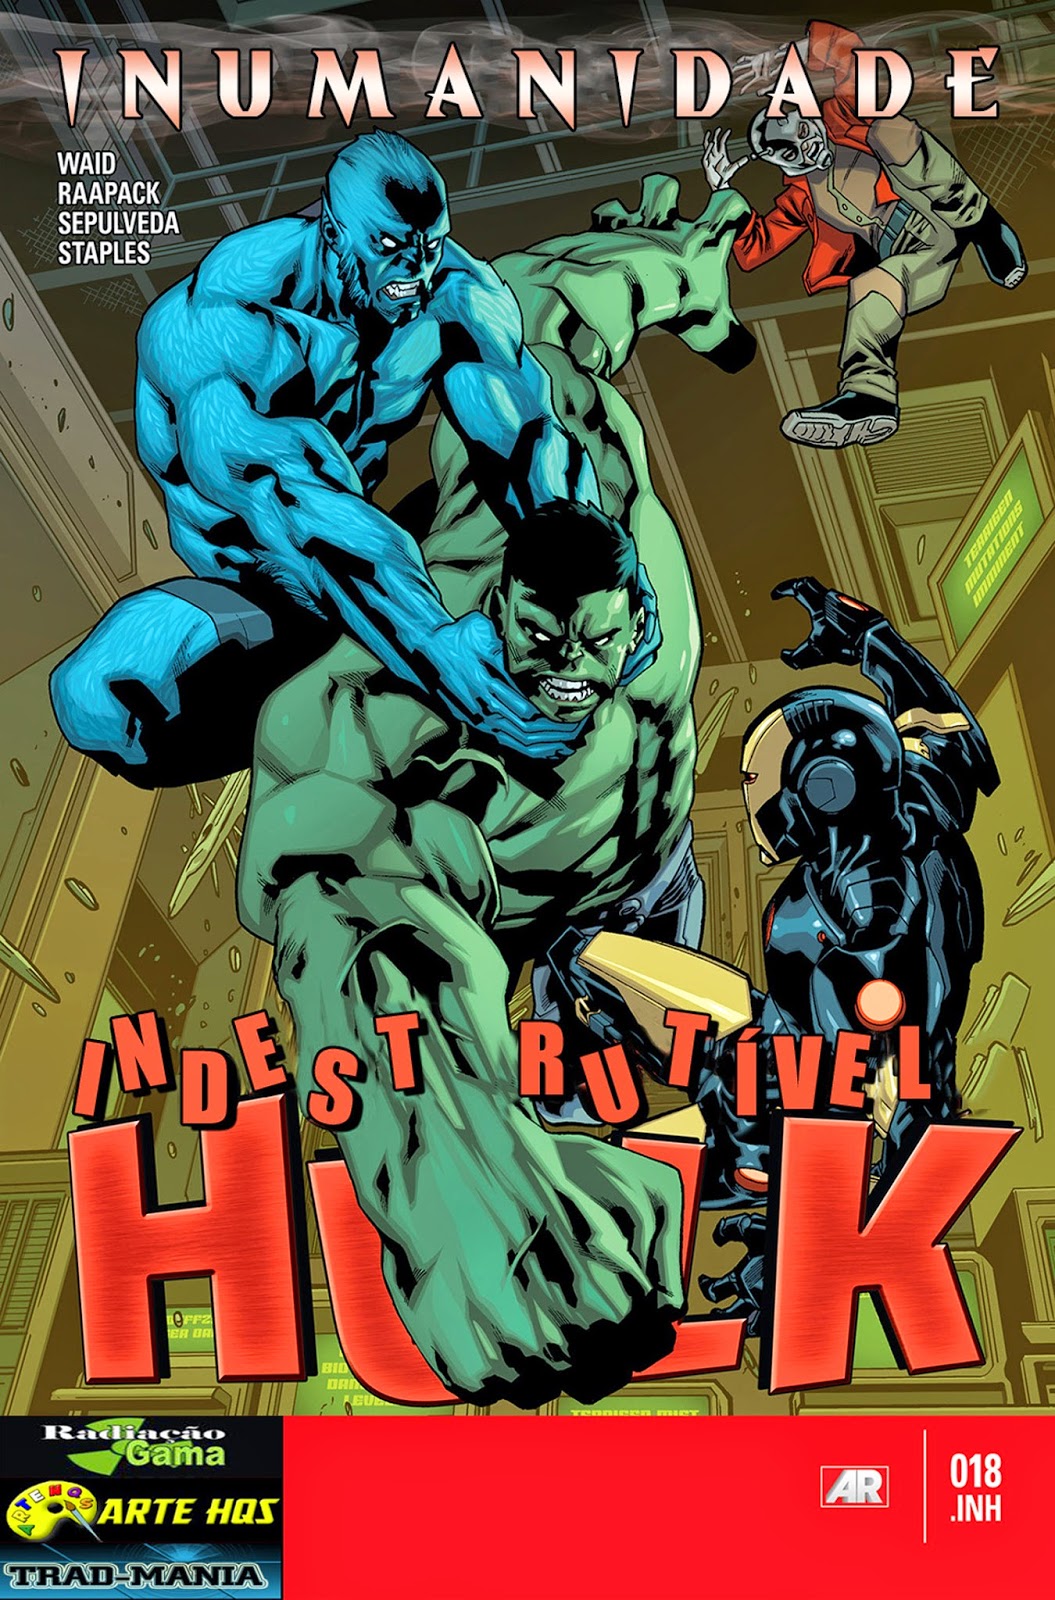 Nova Marvel! O Indestrutível Hulk #18